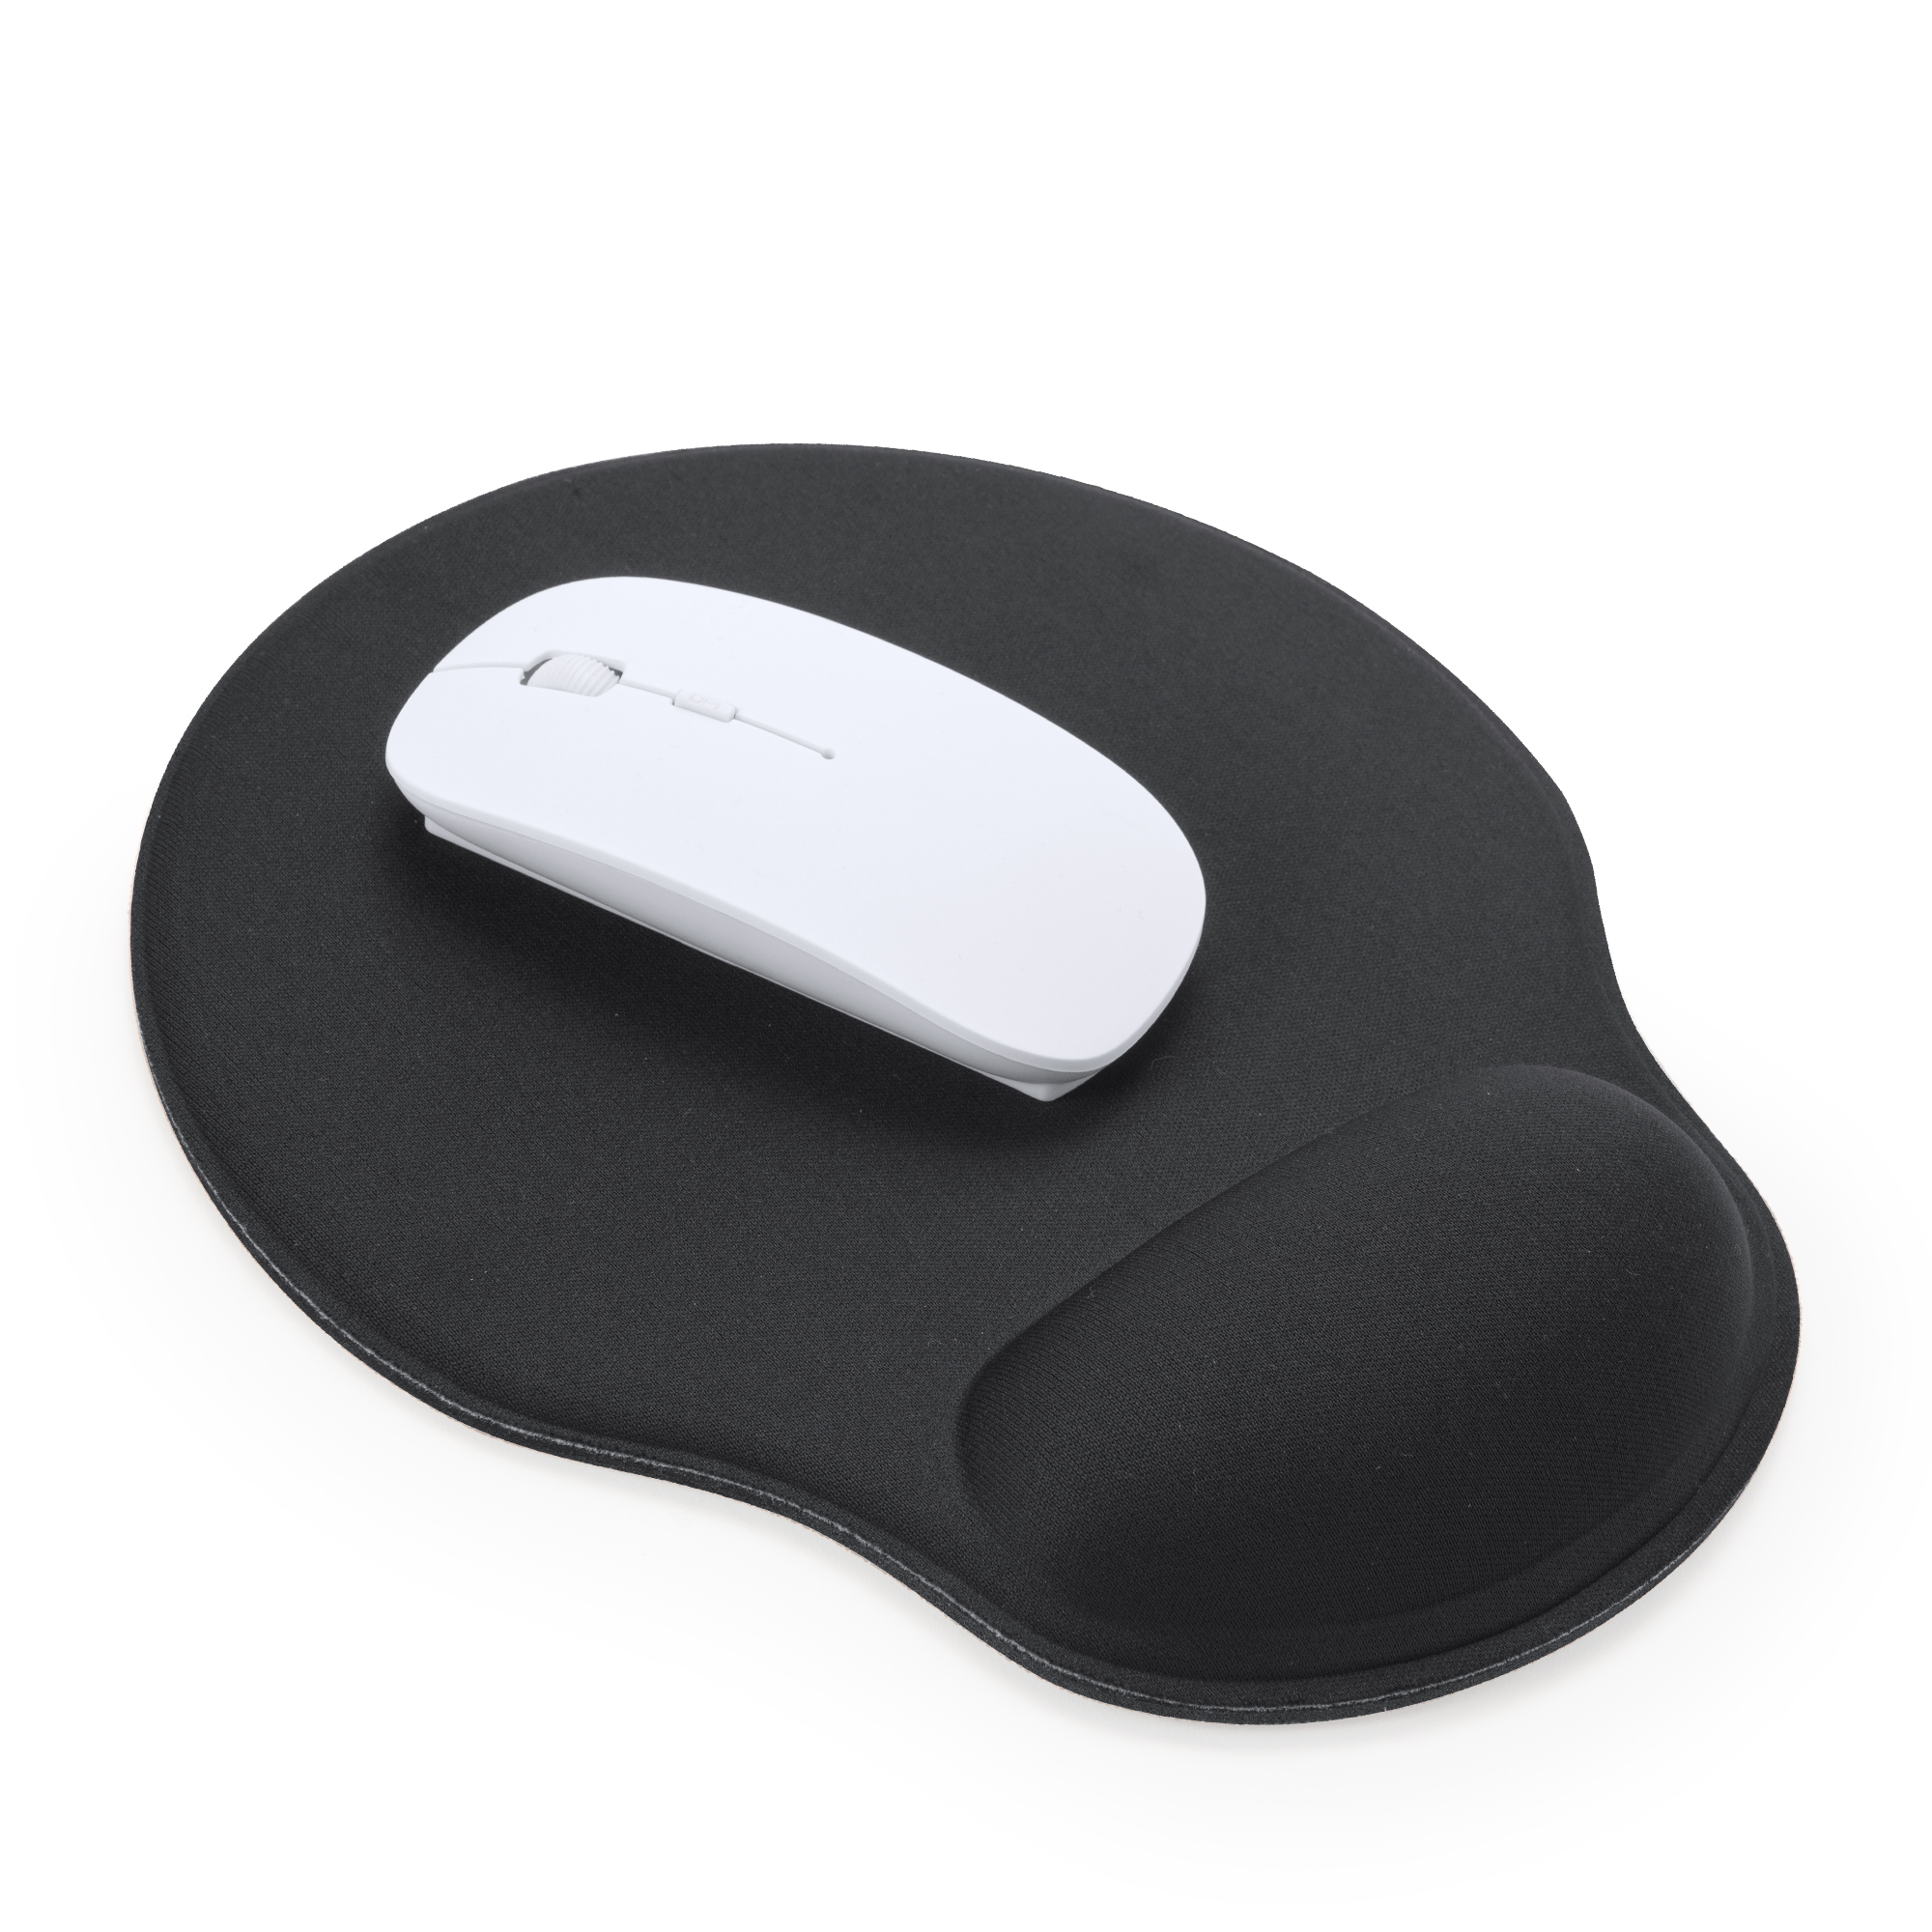 2578-jerry-mouse-wireless-con-sensore-ottico-di-precisione-e-pulsante-dpi-integrato-bianco.jpg